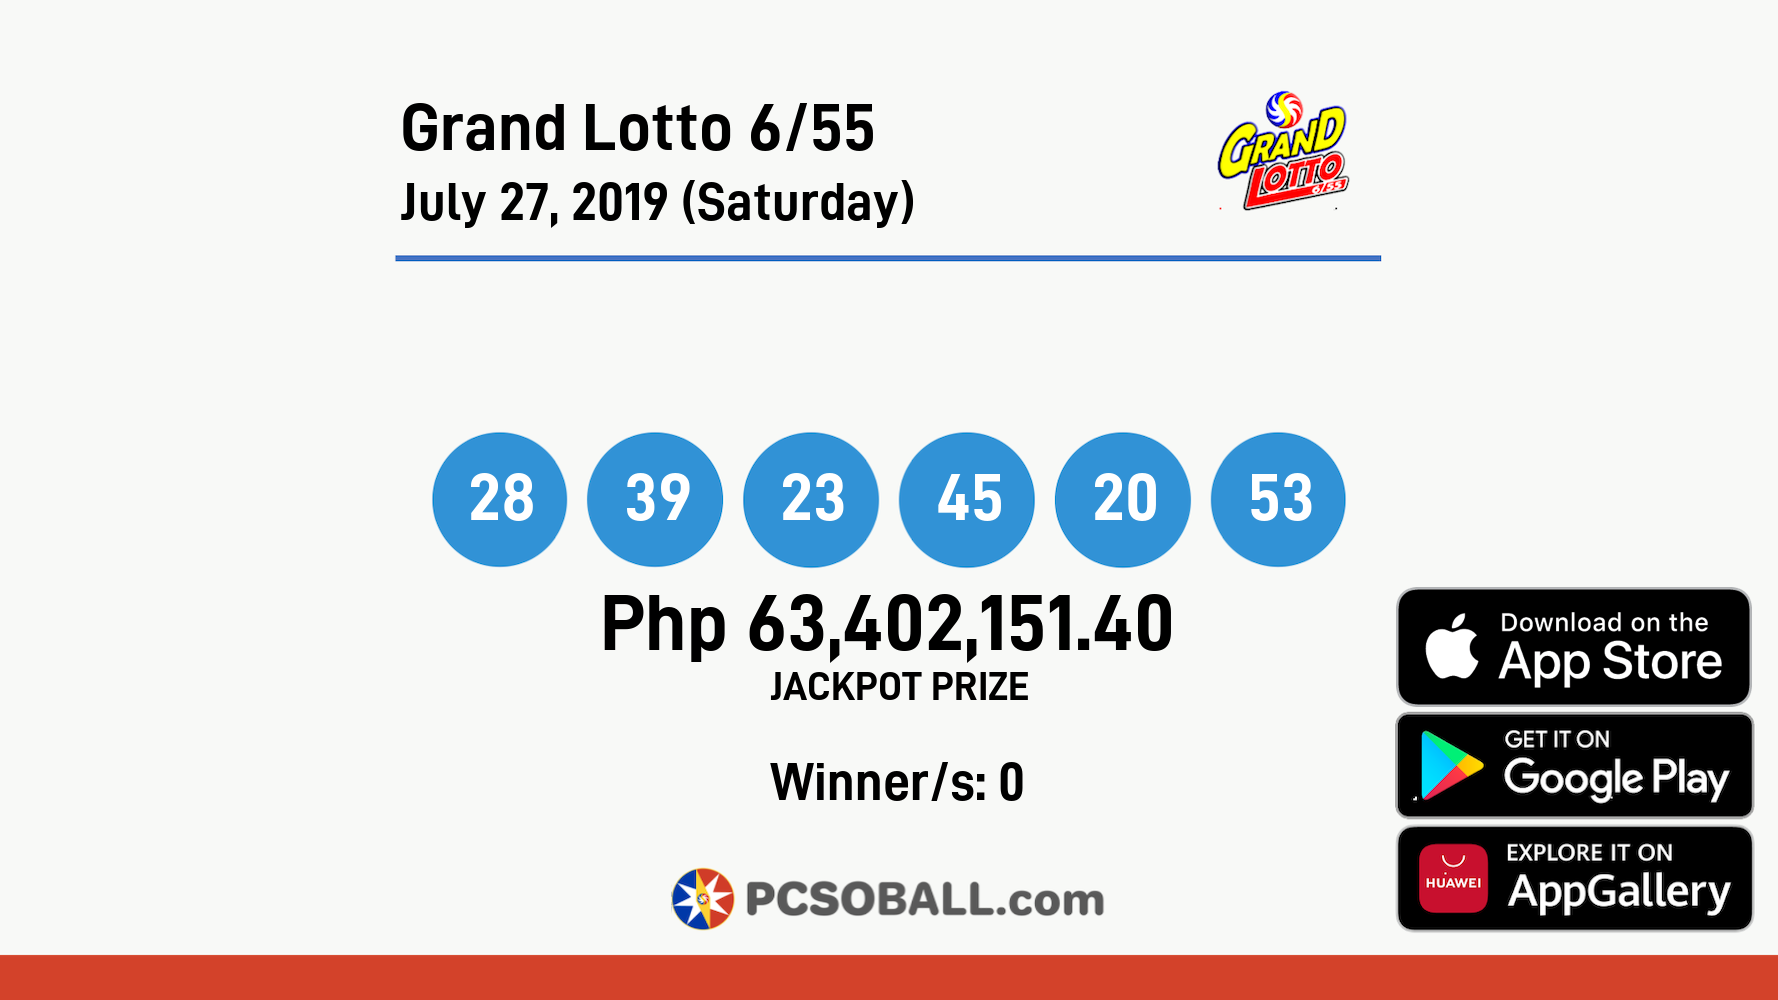 Grand Lotto 6/55 July 27, 2019 (Saturday) Result